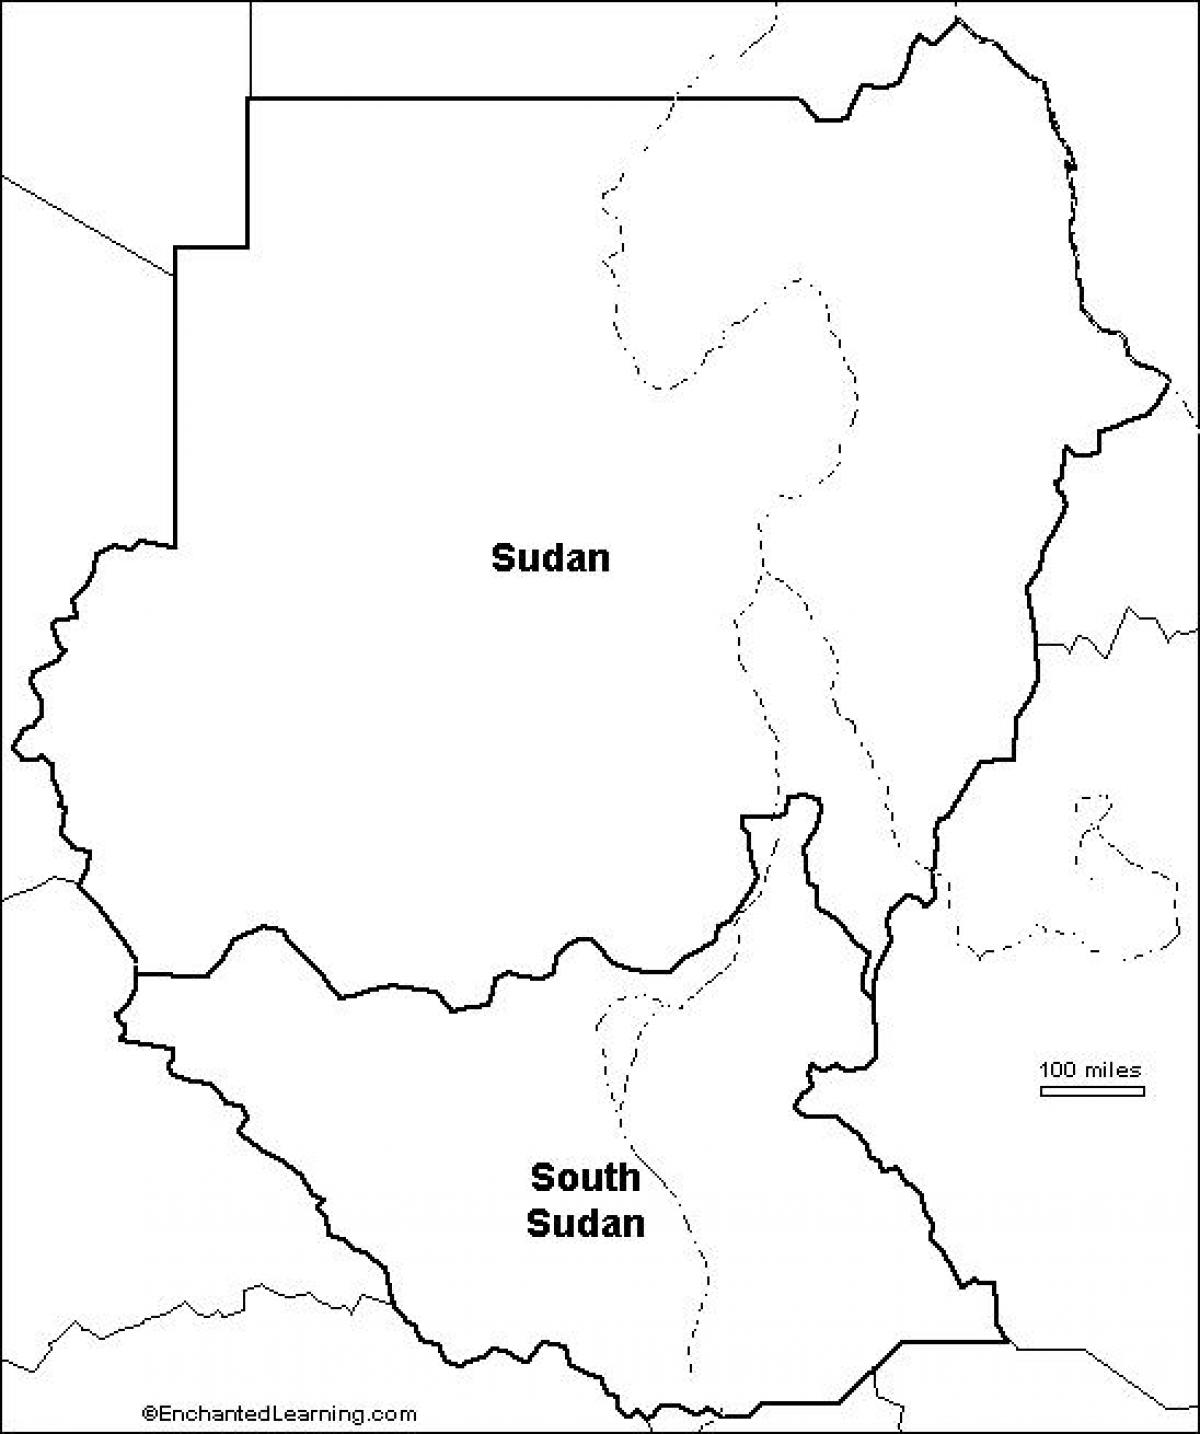 Karta Sudana prazan